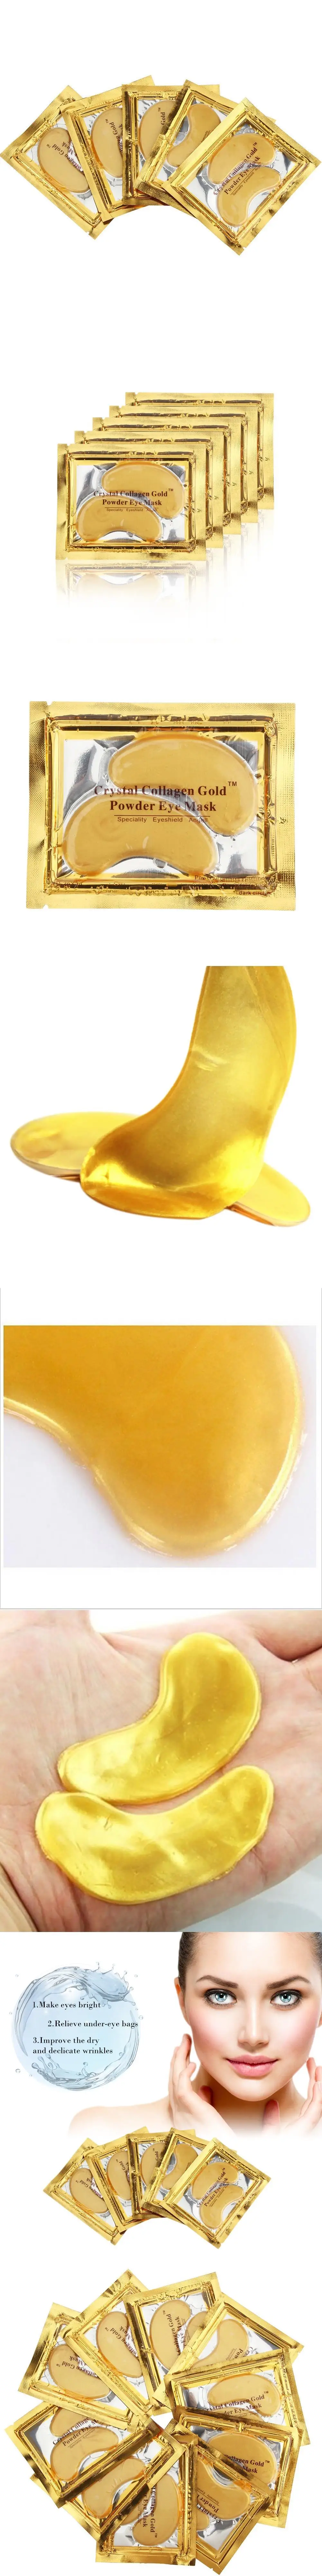 Золотая кристальная коллагеновая маска для глаз горячая Распродажа патчи для глаз против морщин для удаления черных глаз уход за лицом 10 шт = 5 упаковок